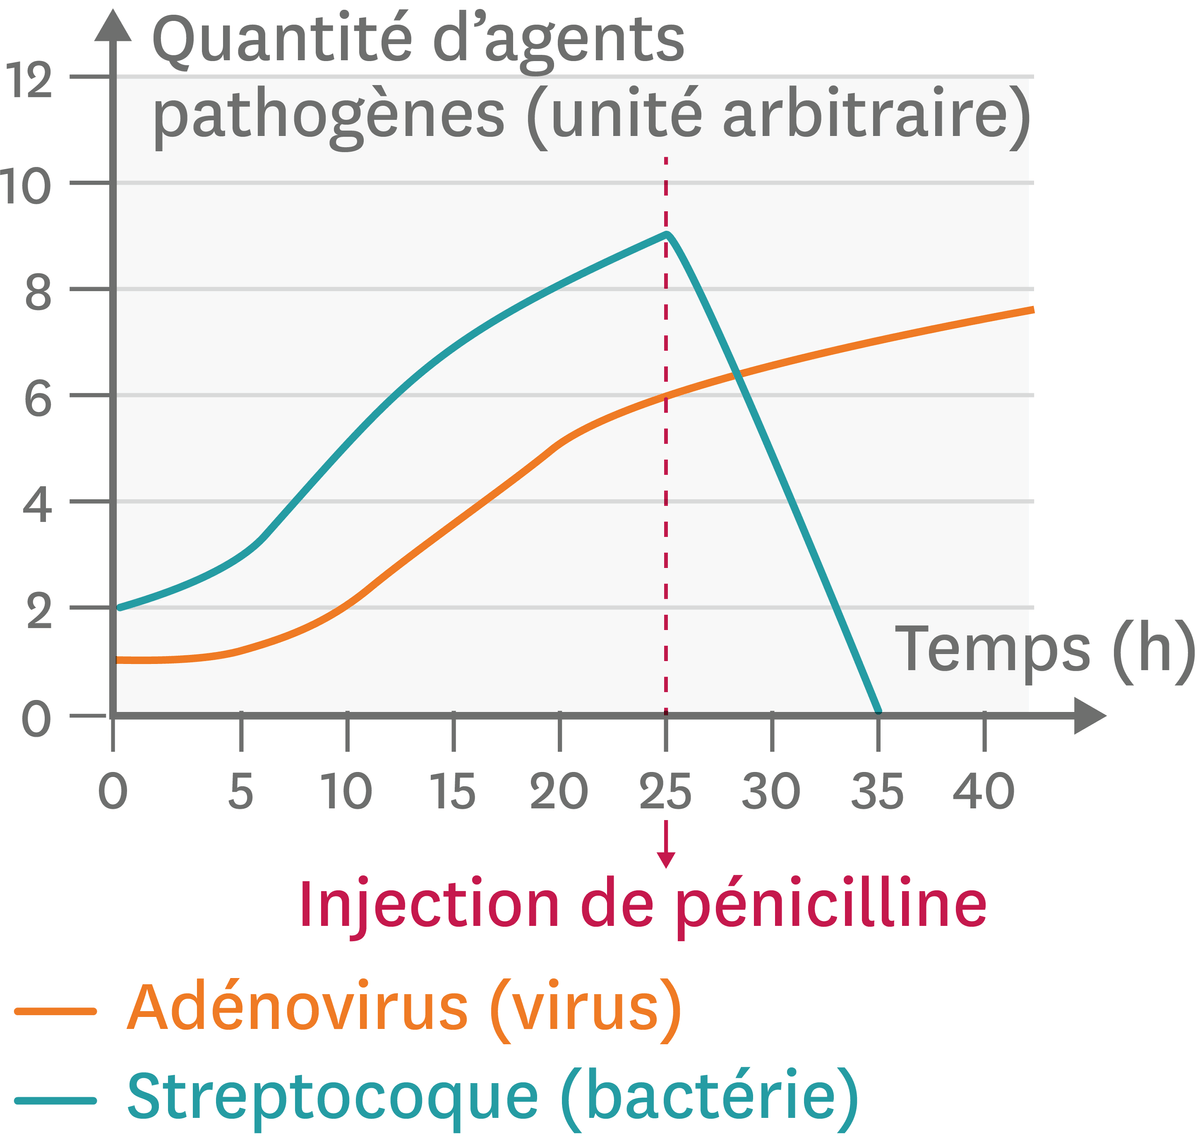 L'effet d'un antibiotique (la pénicilline) contre une bactérie ou un virus.